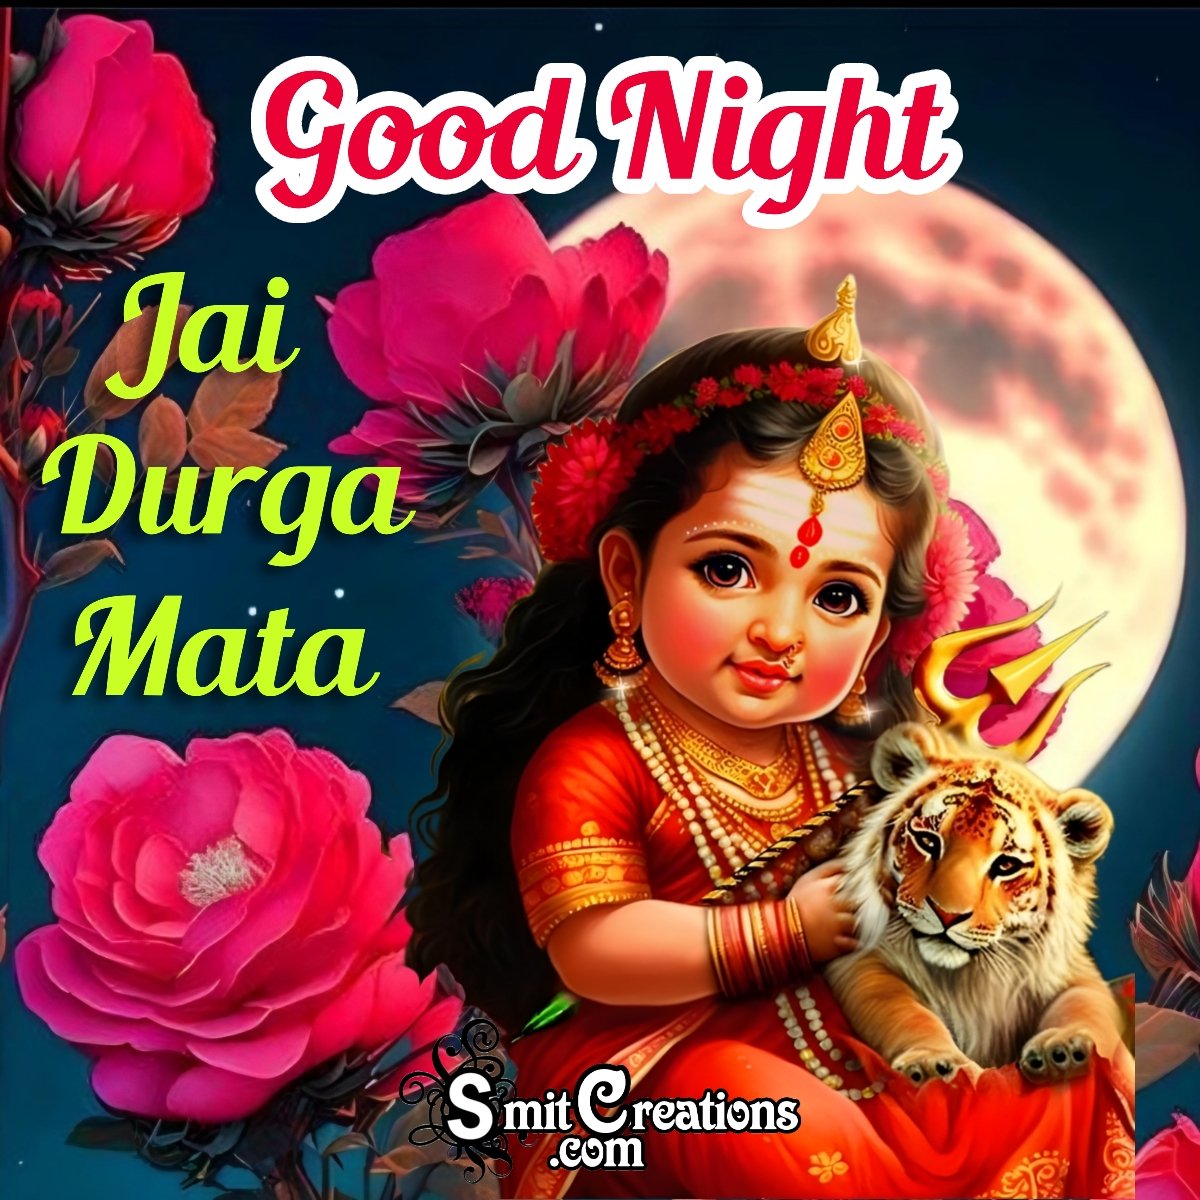 Good Night Jai Durga Mata